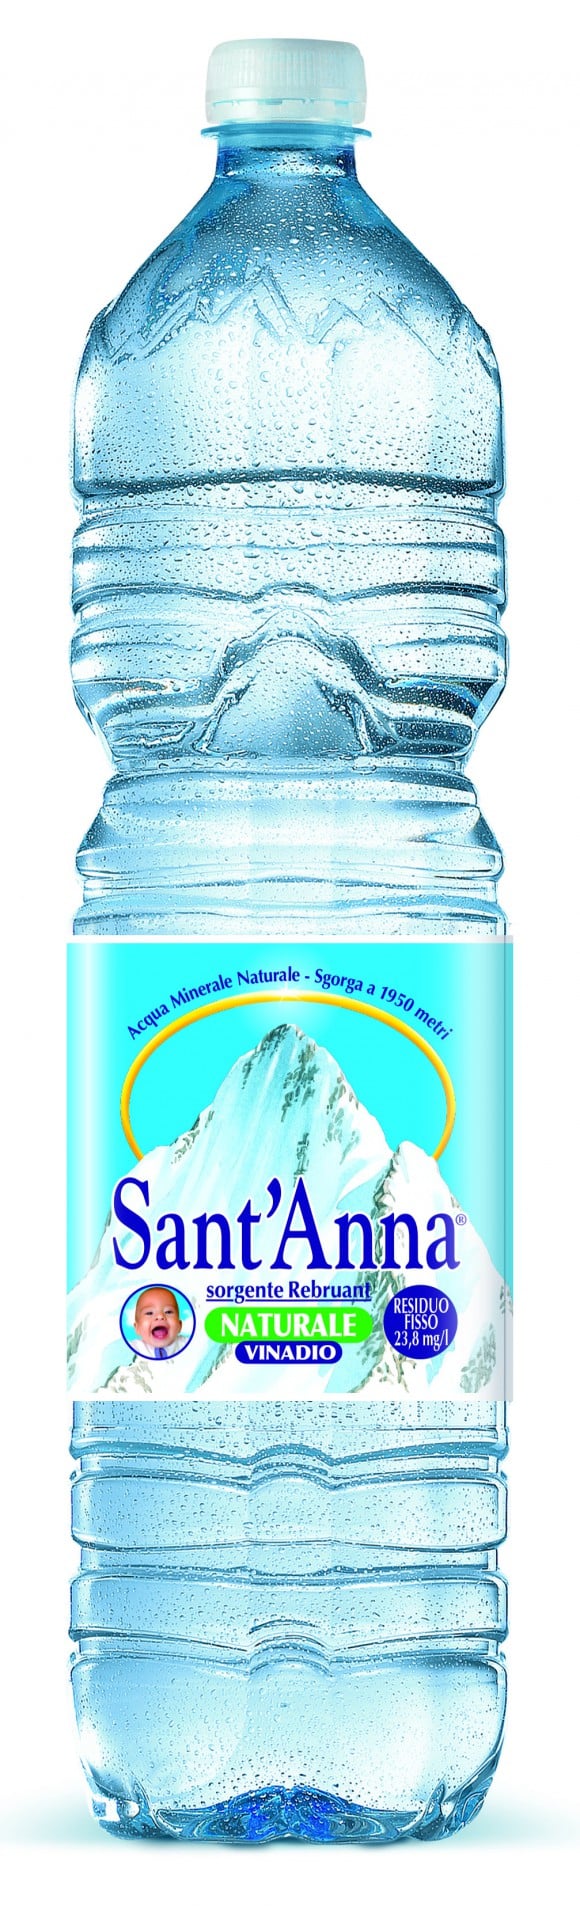 Anche su internet l’acqua Sant’Anna  ha fatto centro - Sapori News 